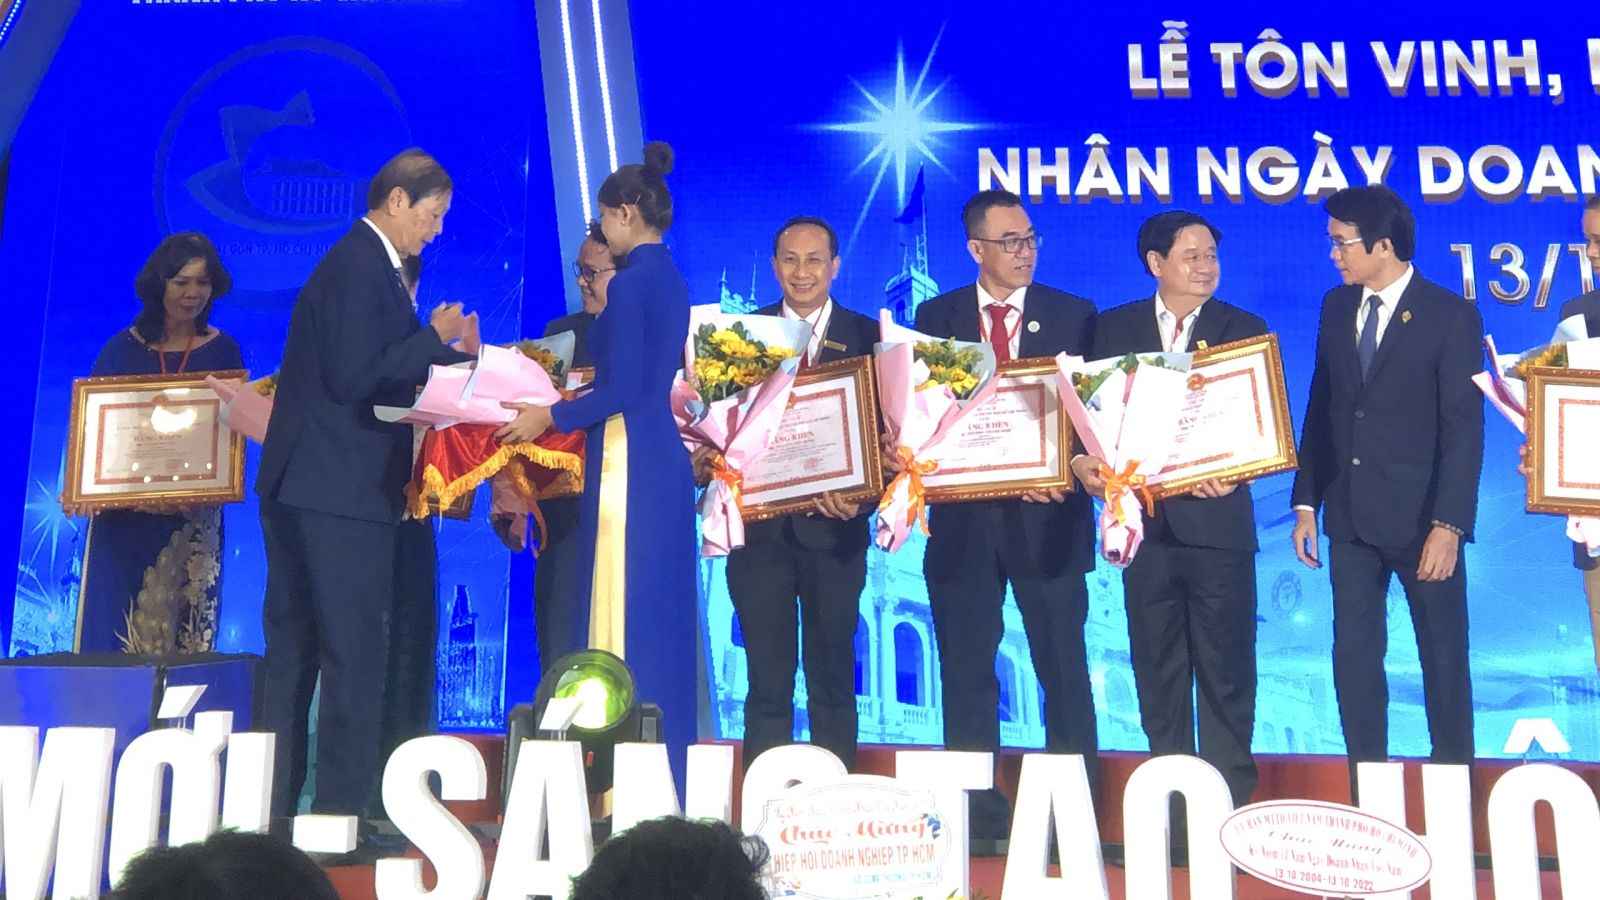 ​Ông Nguyễn Viết Hồng – TGĐ Vina CHG nhận bằng khen của Chủ tịch UBND TP.HCM tại buổi lễ tôn vinh, khen thưởng nhân ngày Doanh nhân Việt Nam của UBND TP.HCM và HUBA tổ chức.